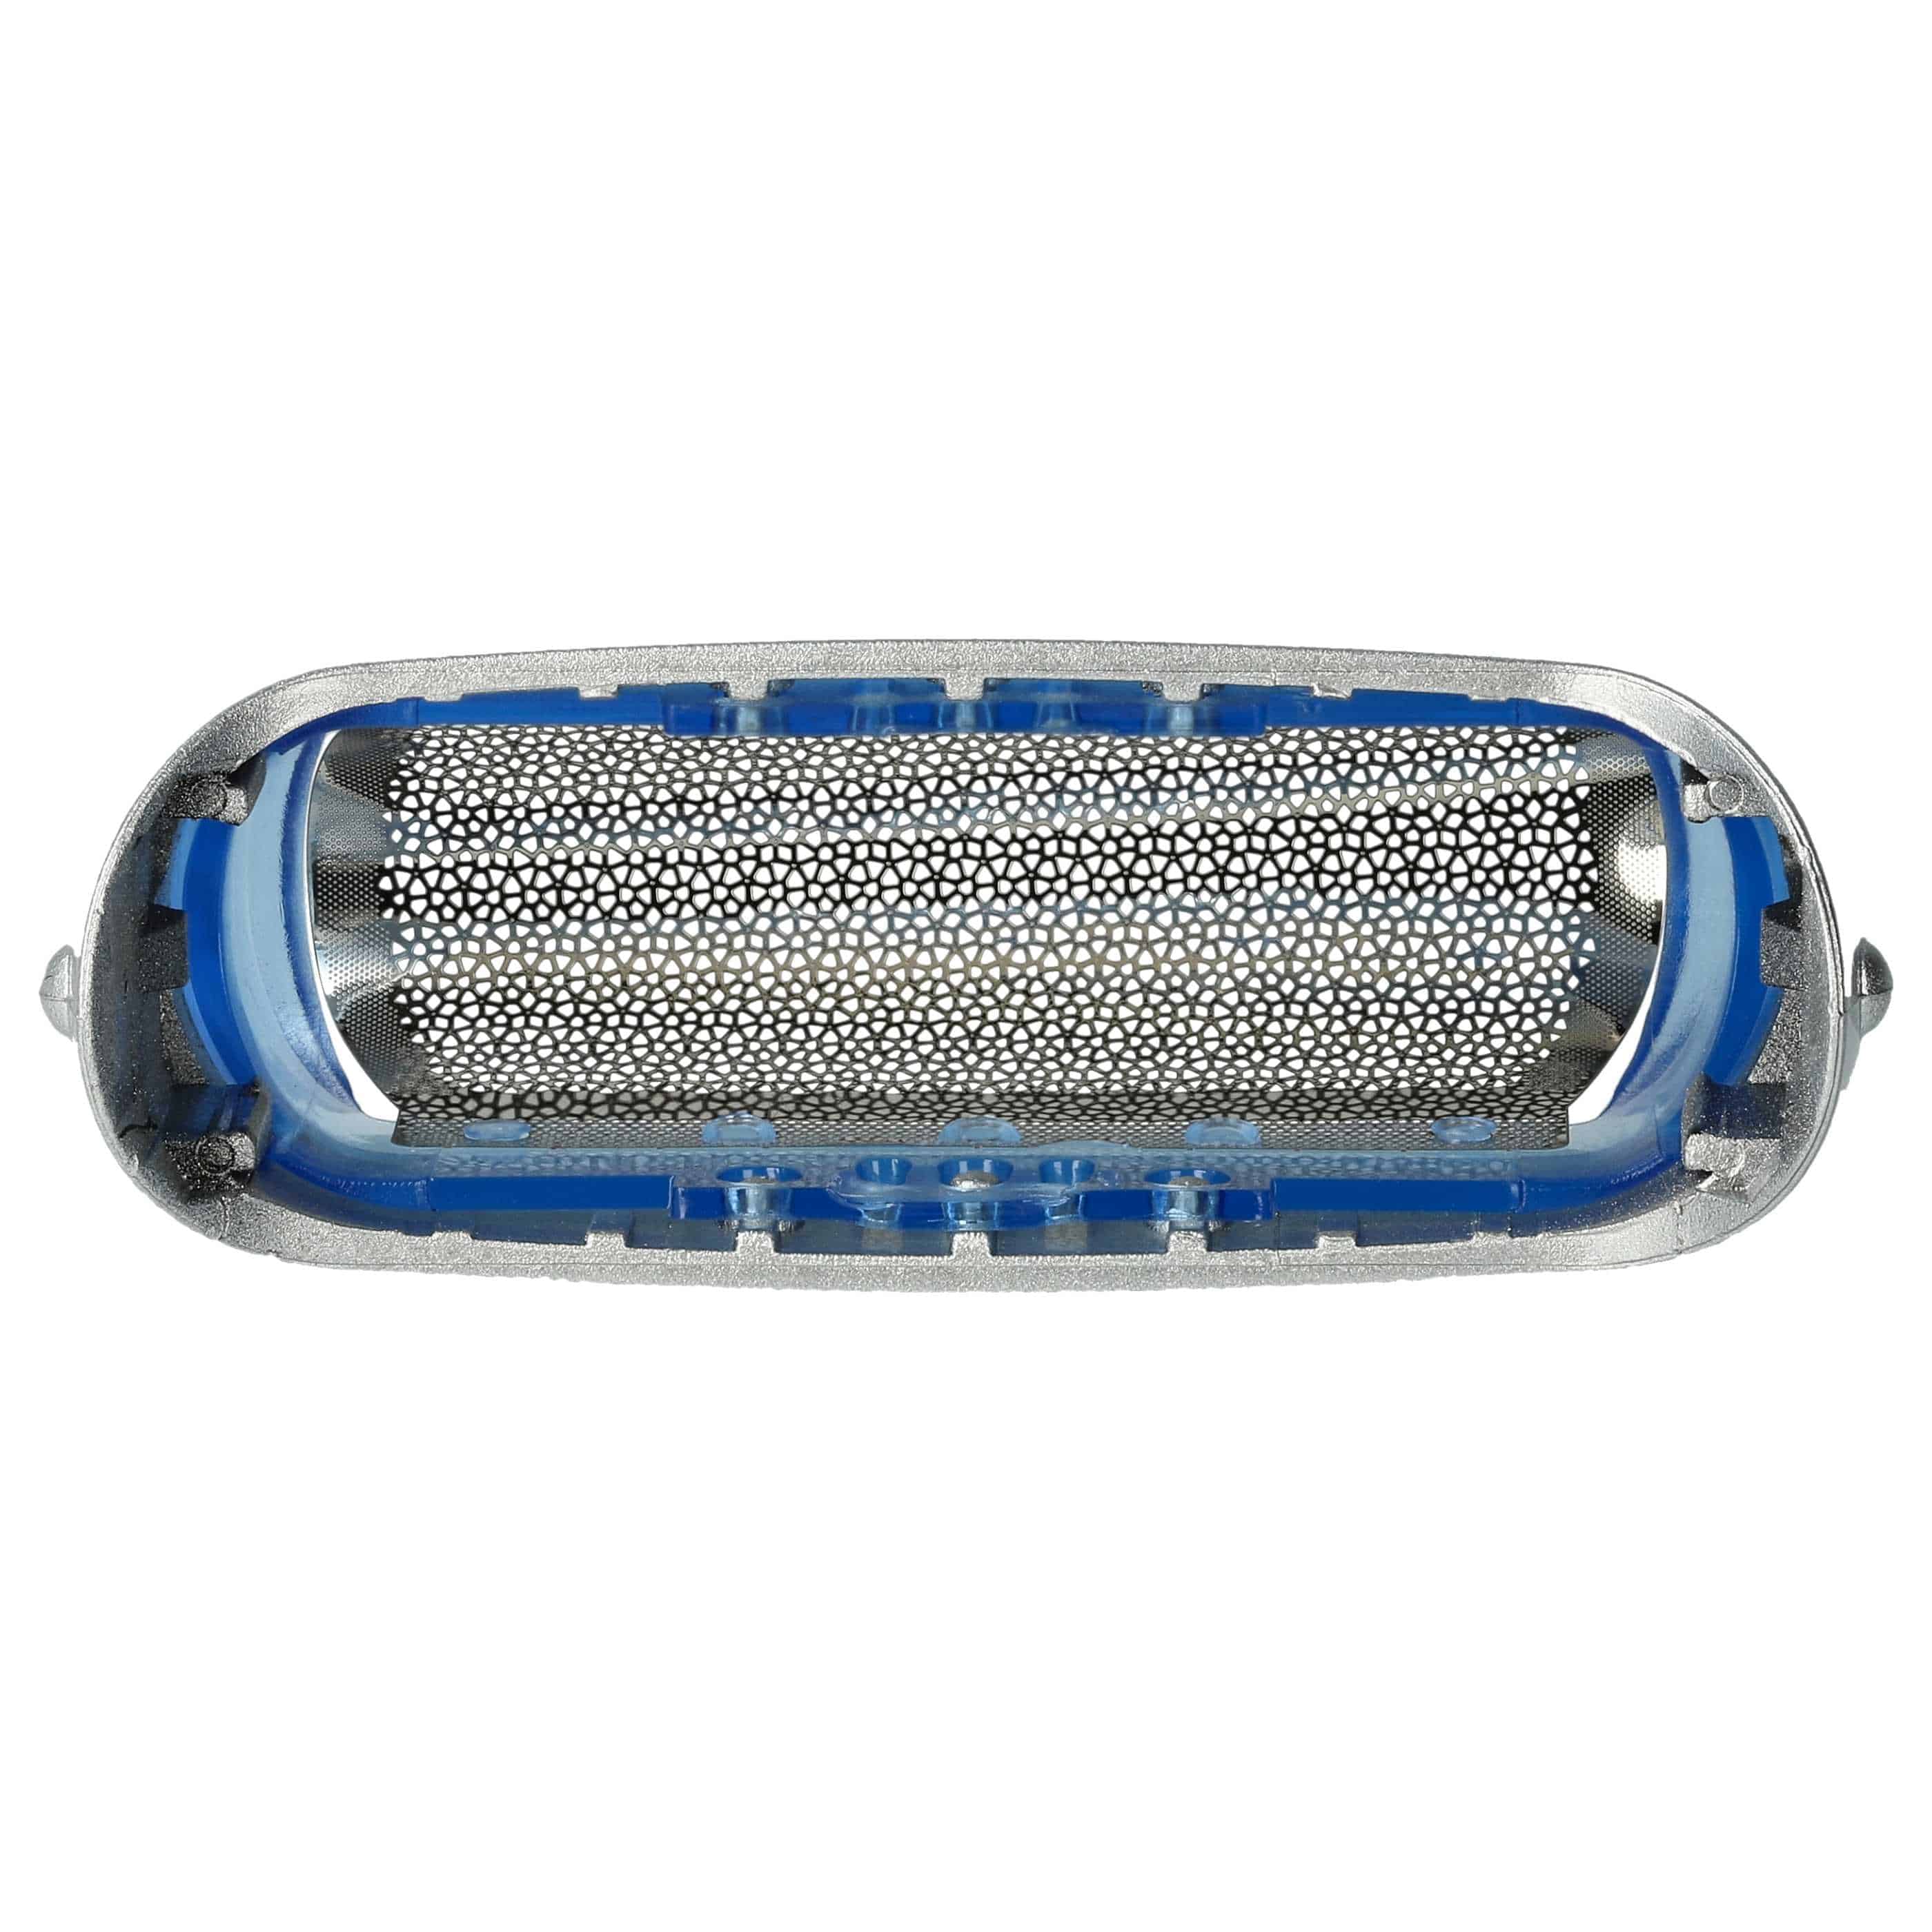 Lámina de corte reemplaza Braun 20S para afeitadoras Braun - incl. marco, plata/azul